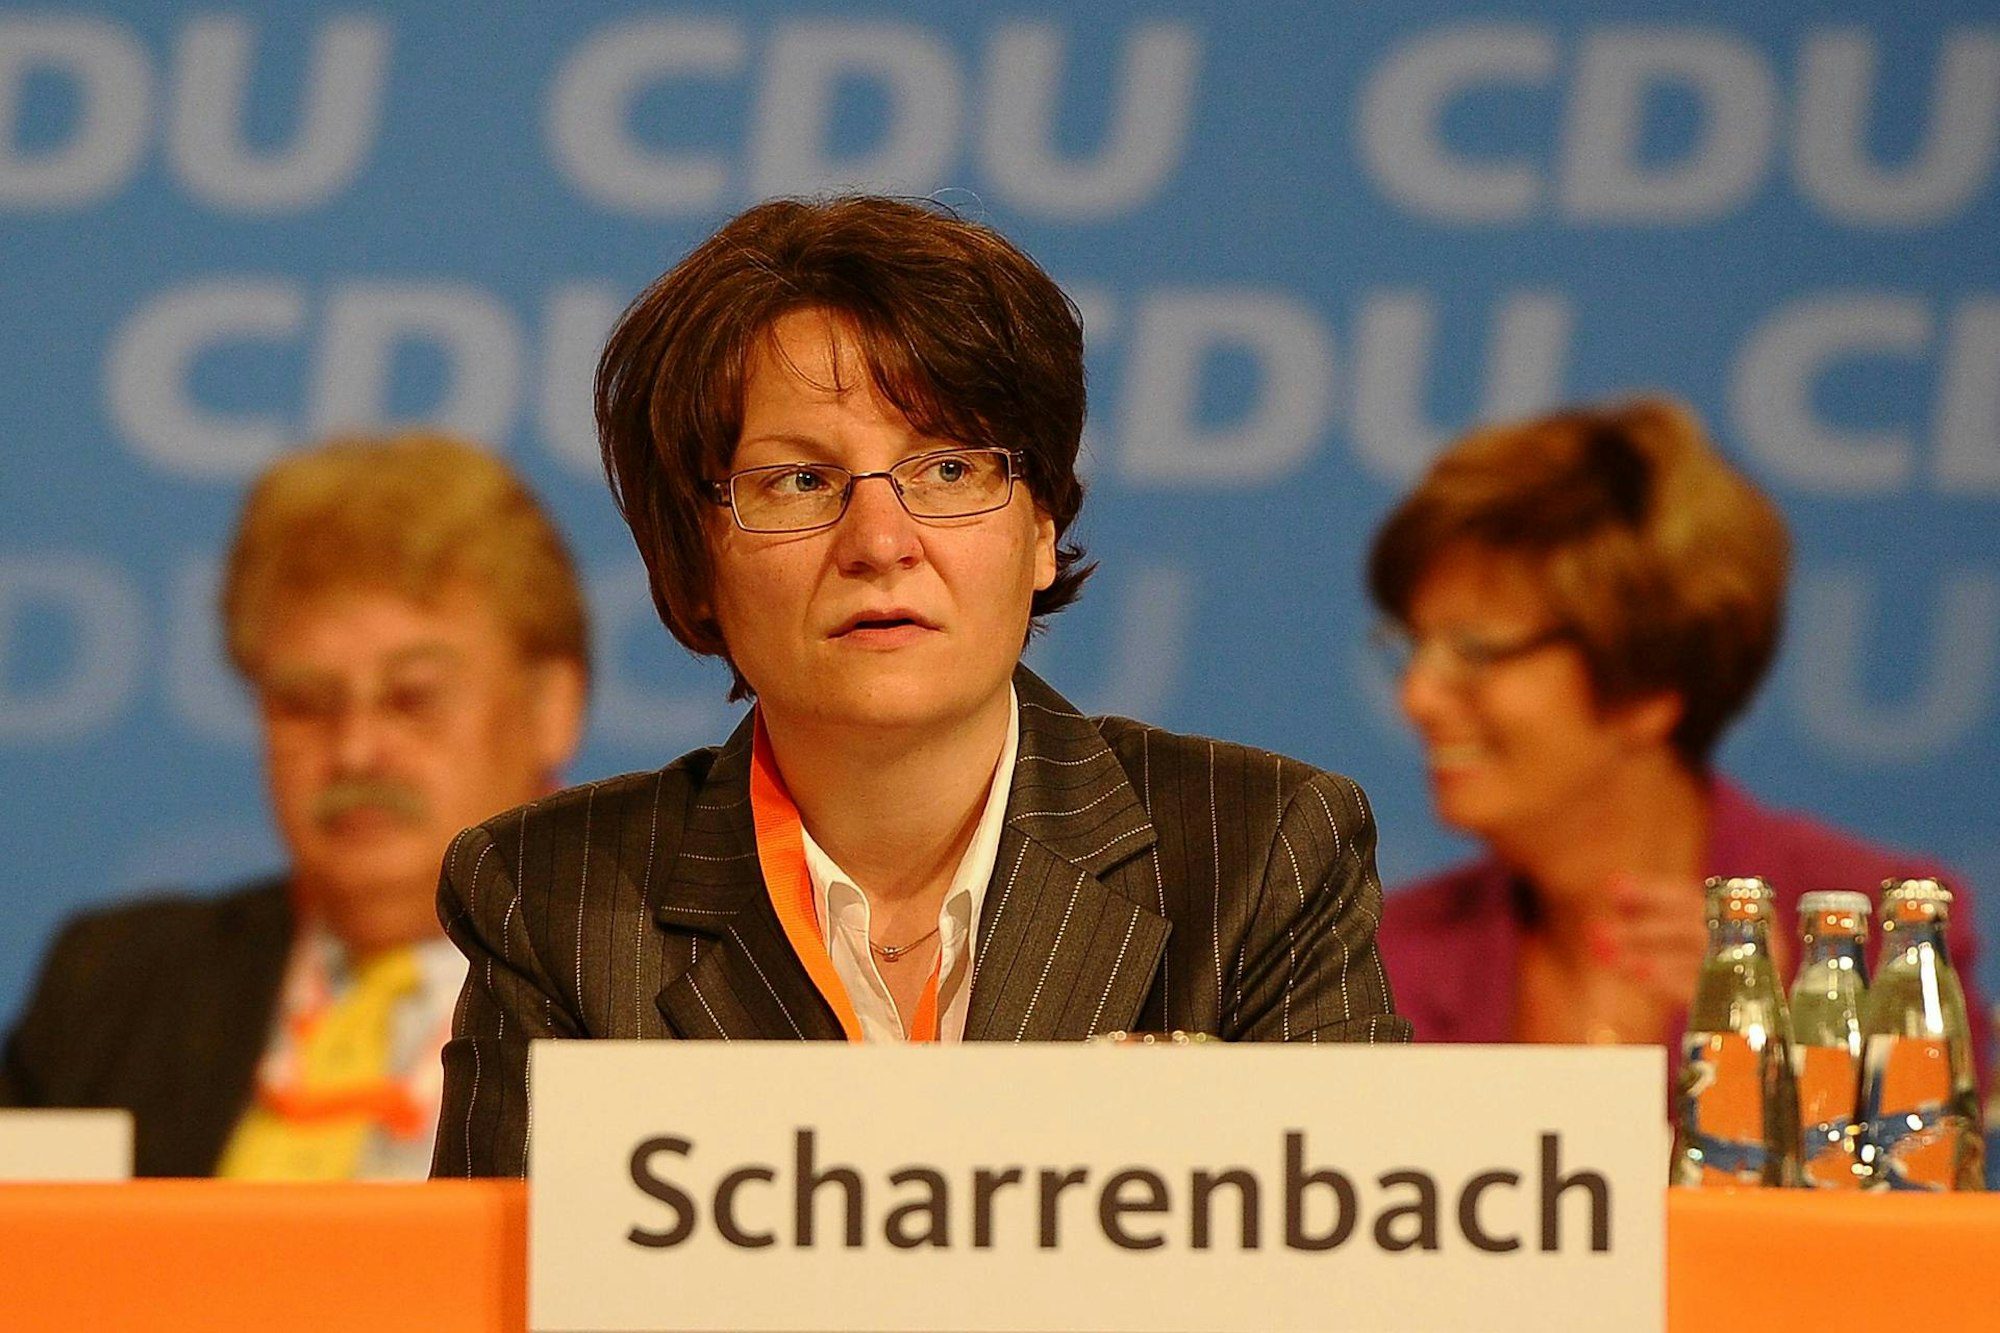 Ina Scharrenbach